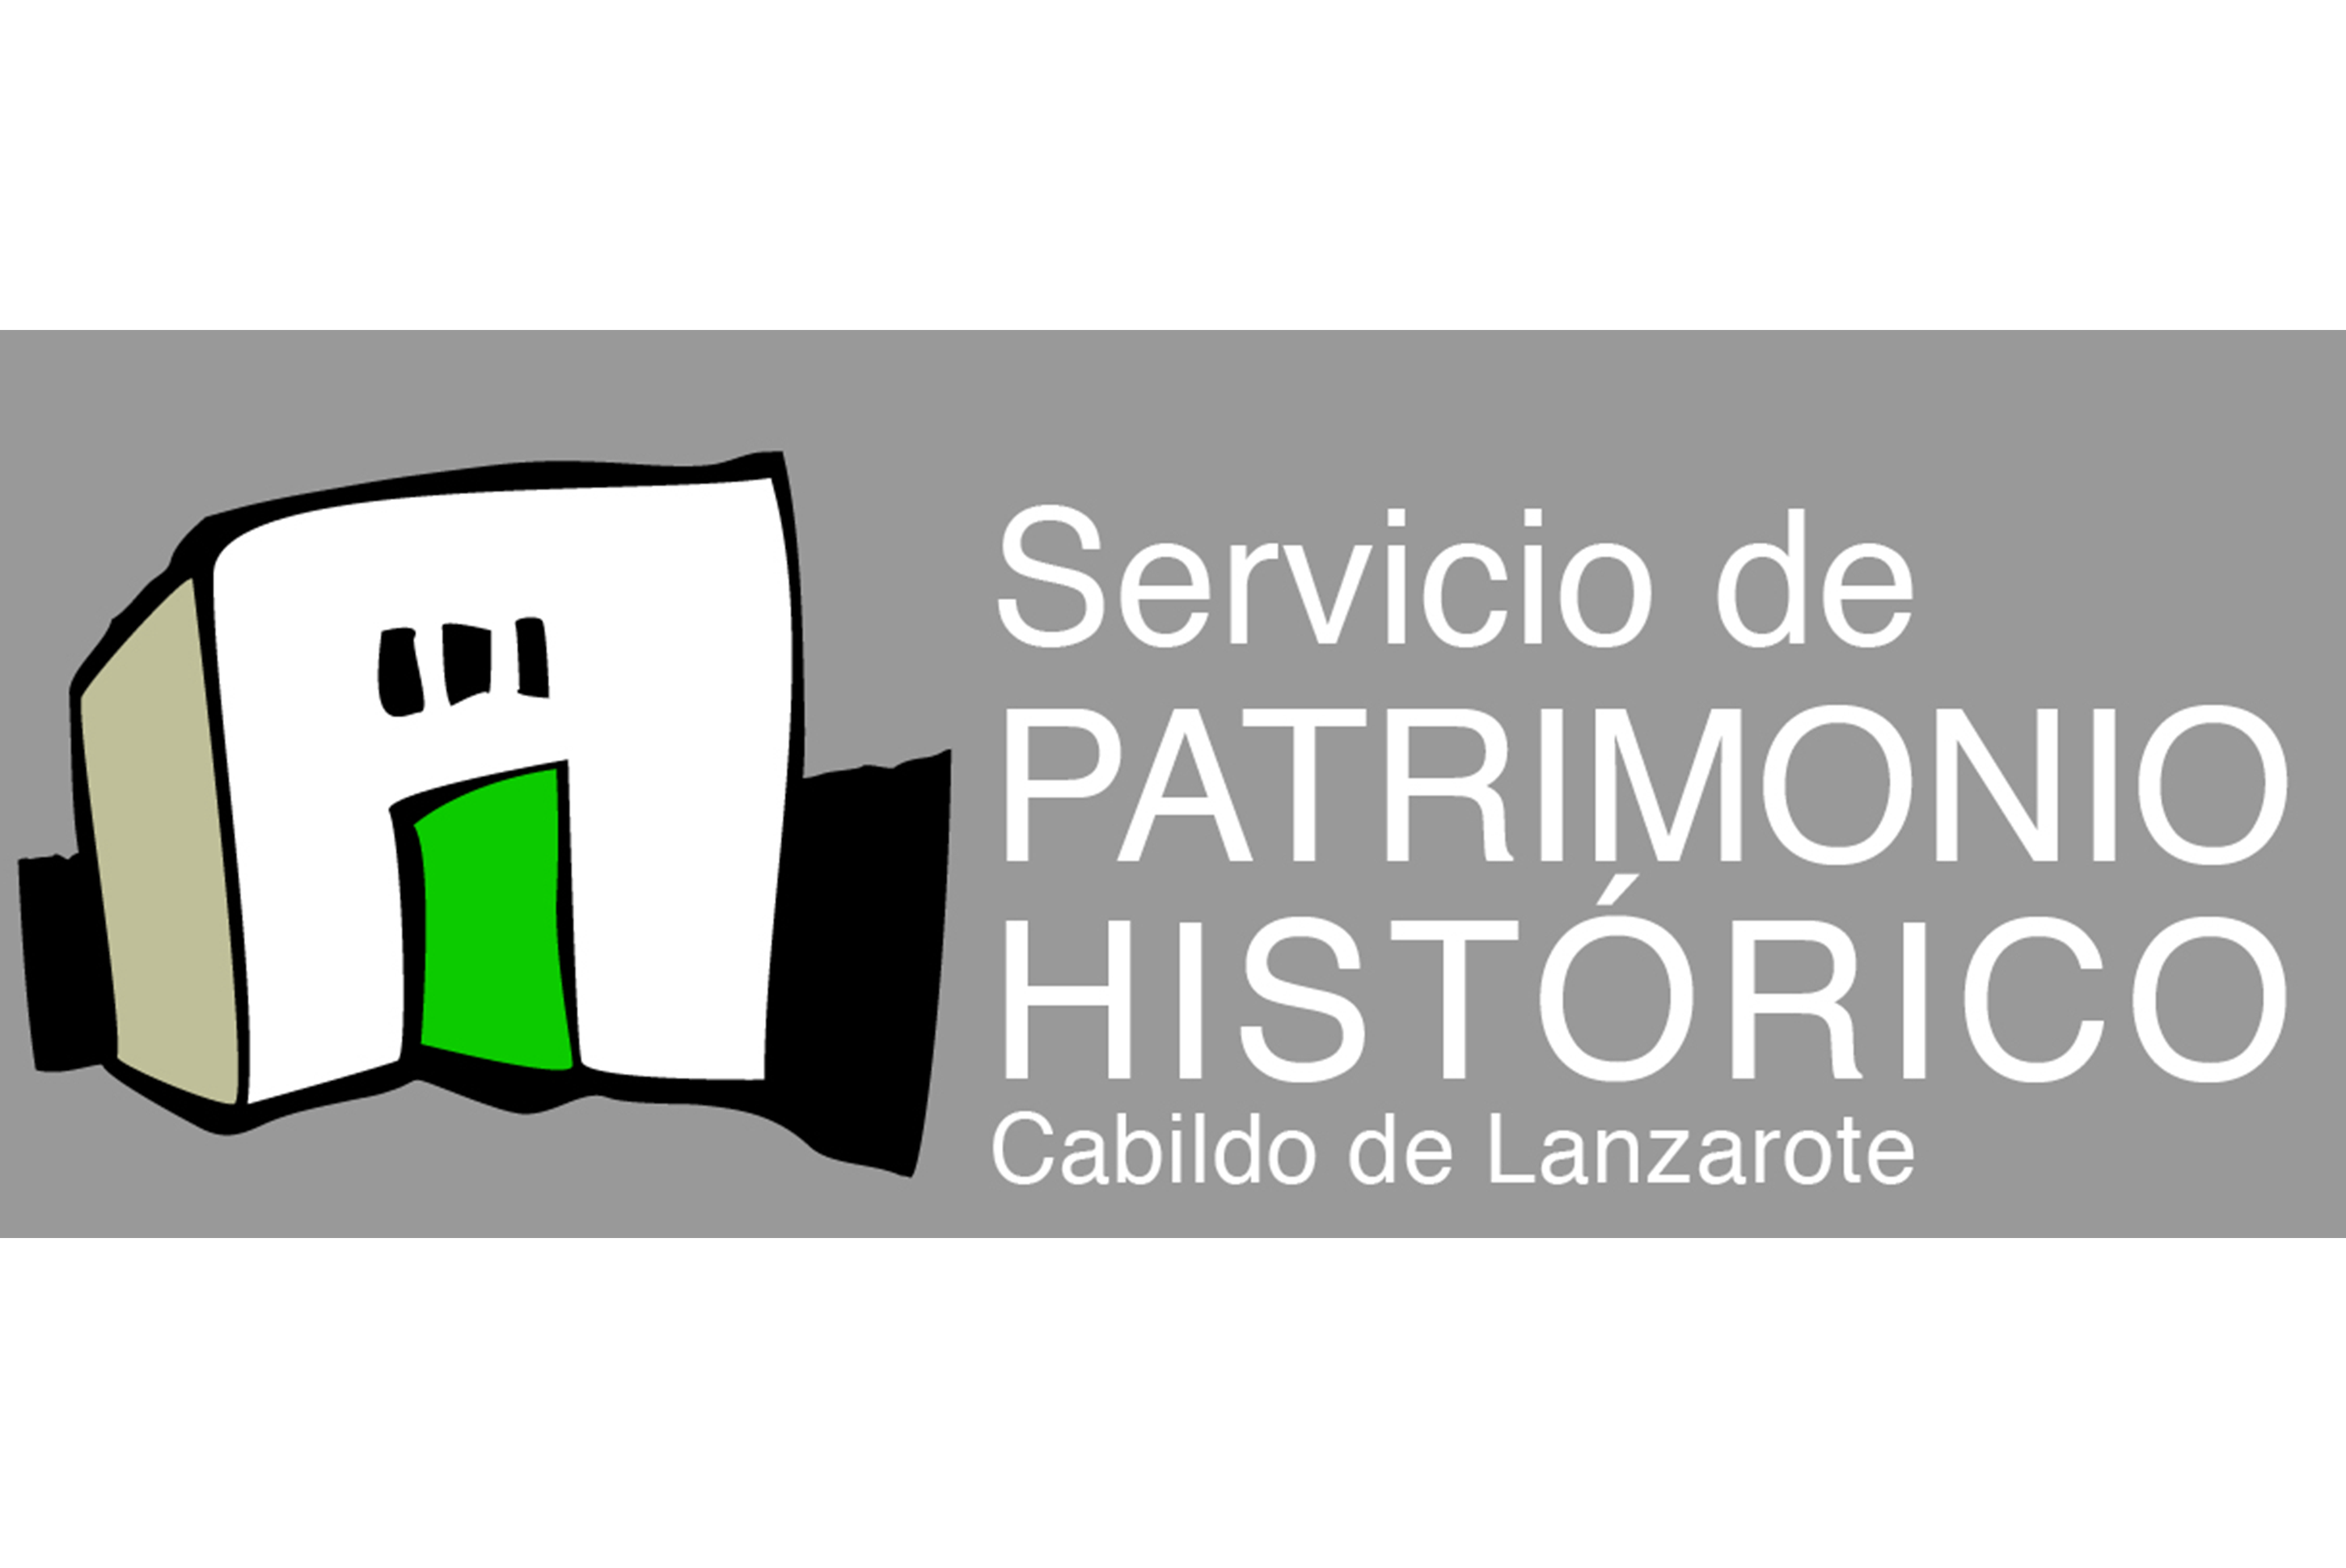 Patrimonio Histórico del Cabildo de Lanzarote - Facebook